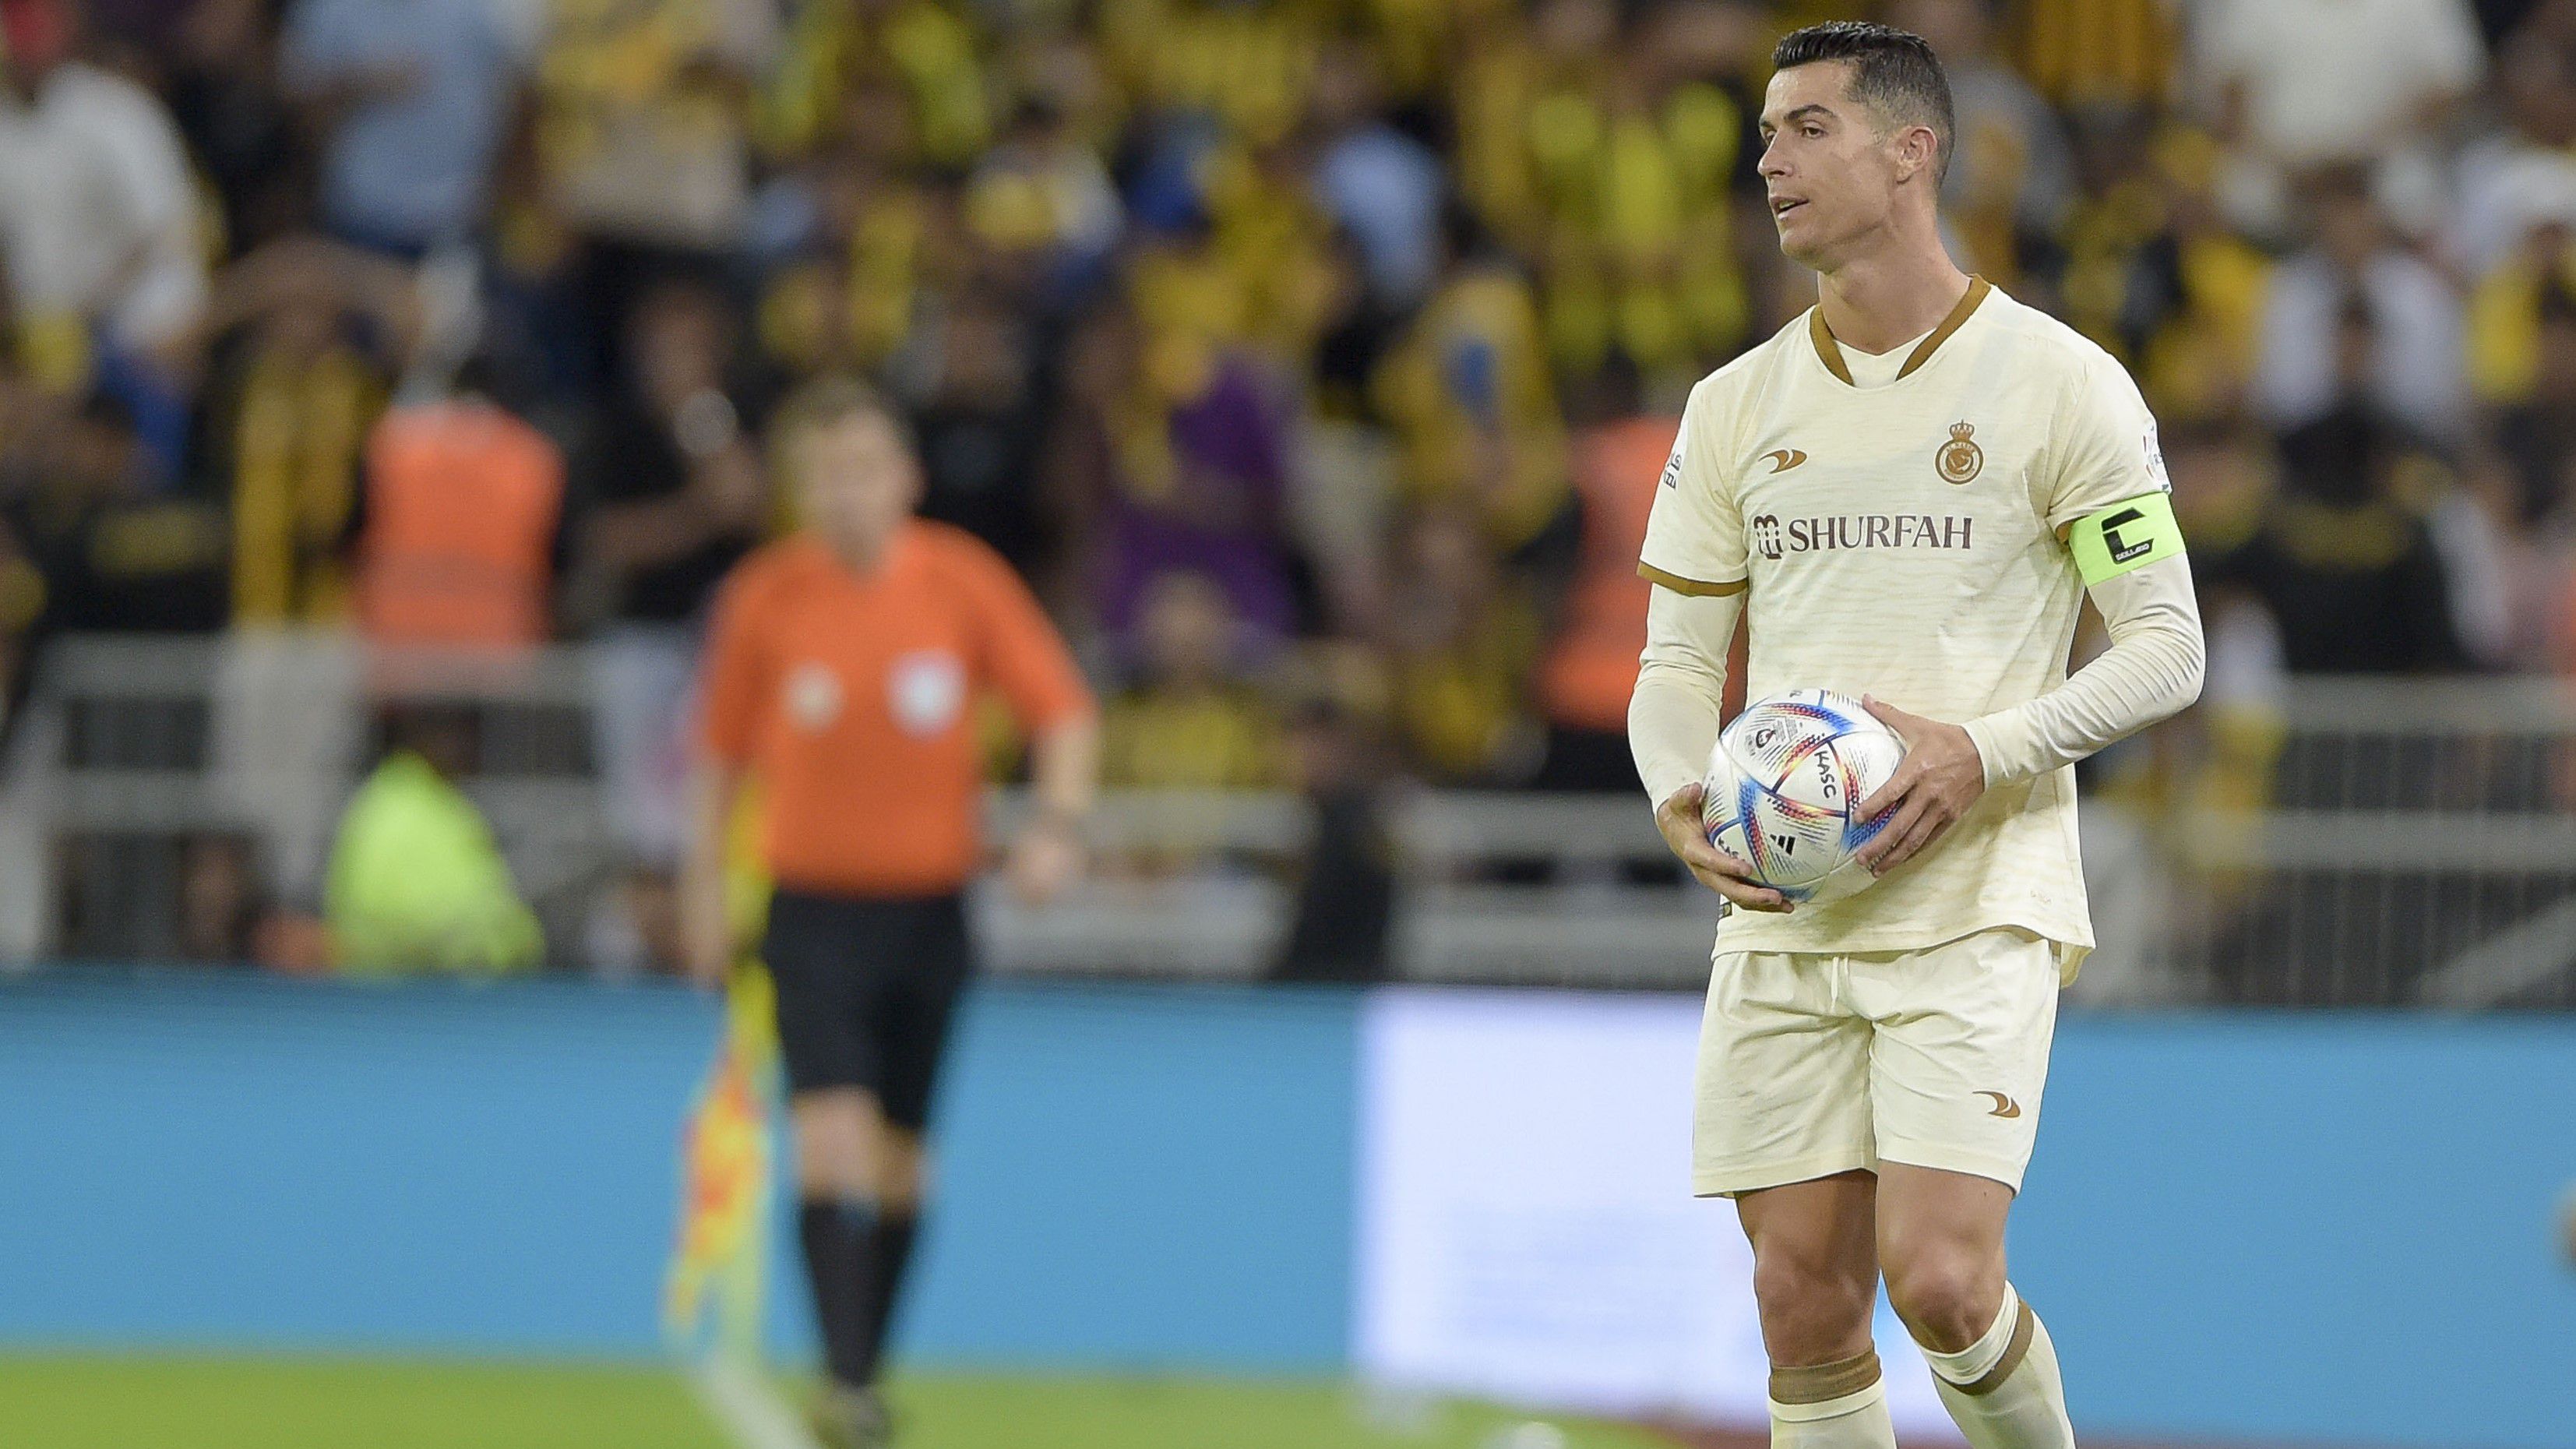 Cristiano Ronaldo nekiesett a játékvezetőnek, meg is lett jutalma – videóval